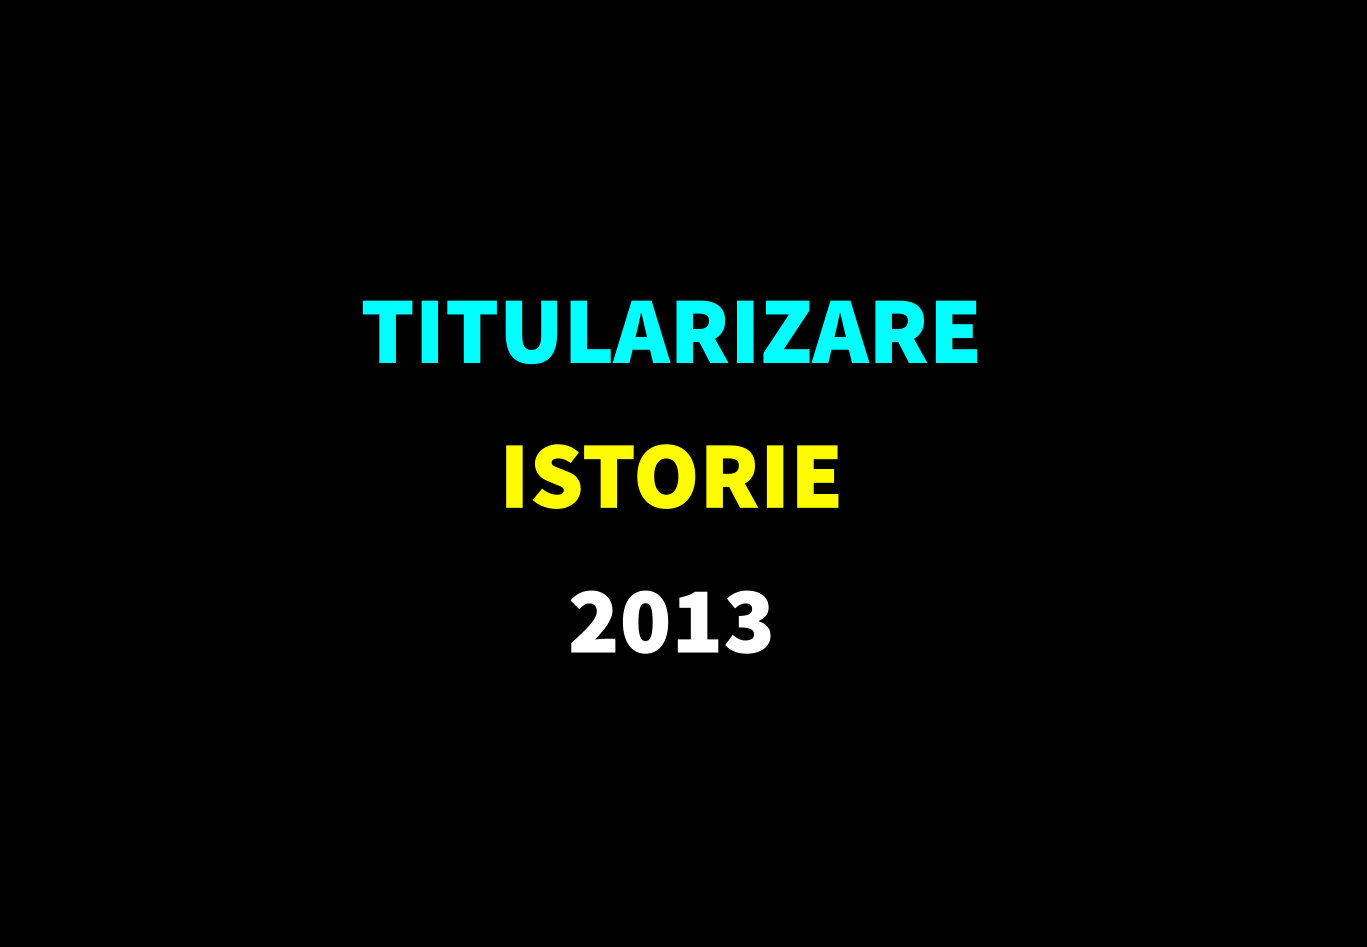 Titularizare istorie 2013